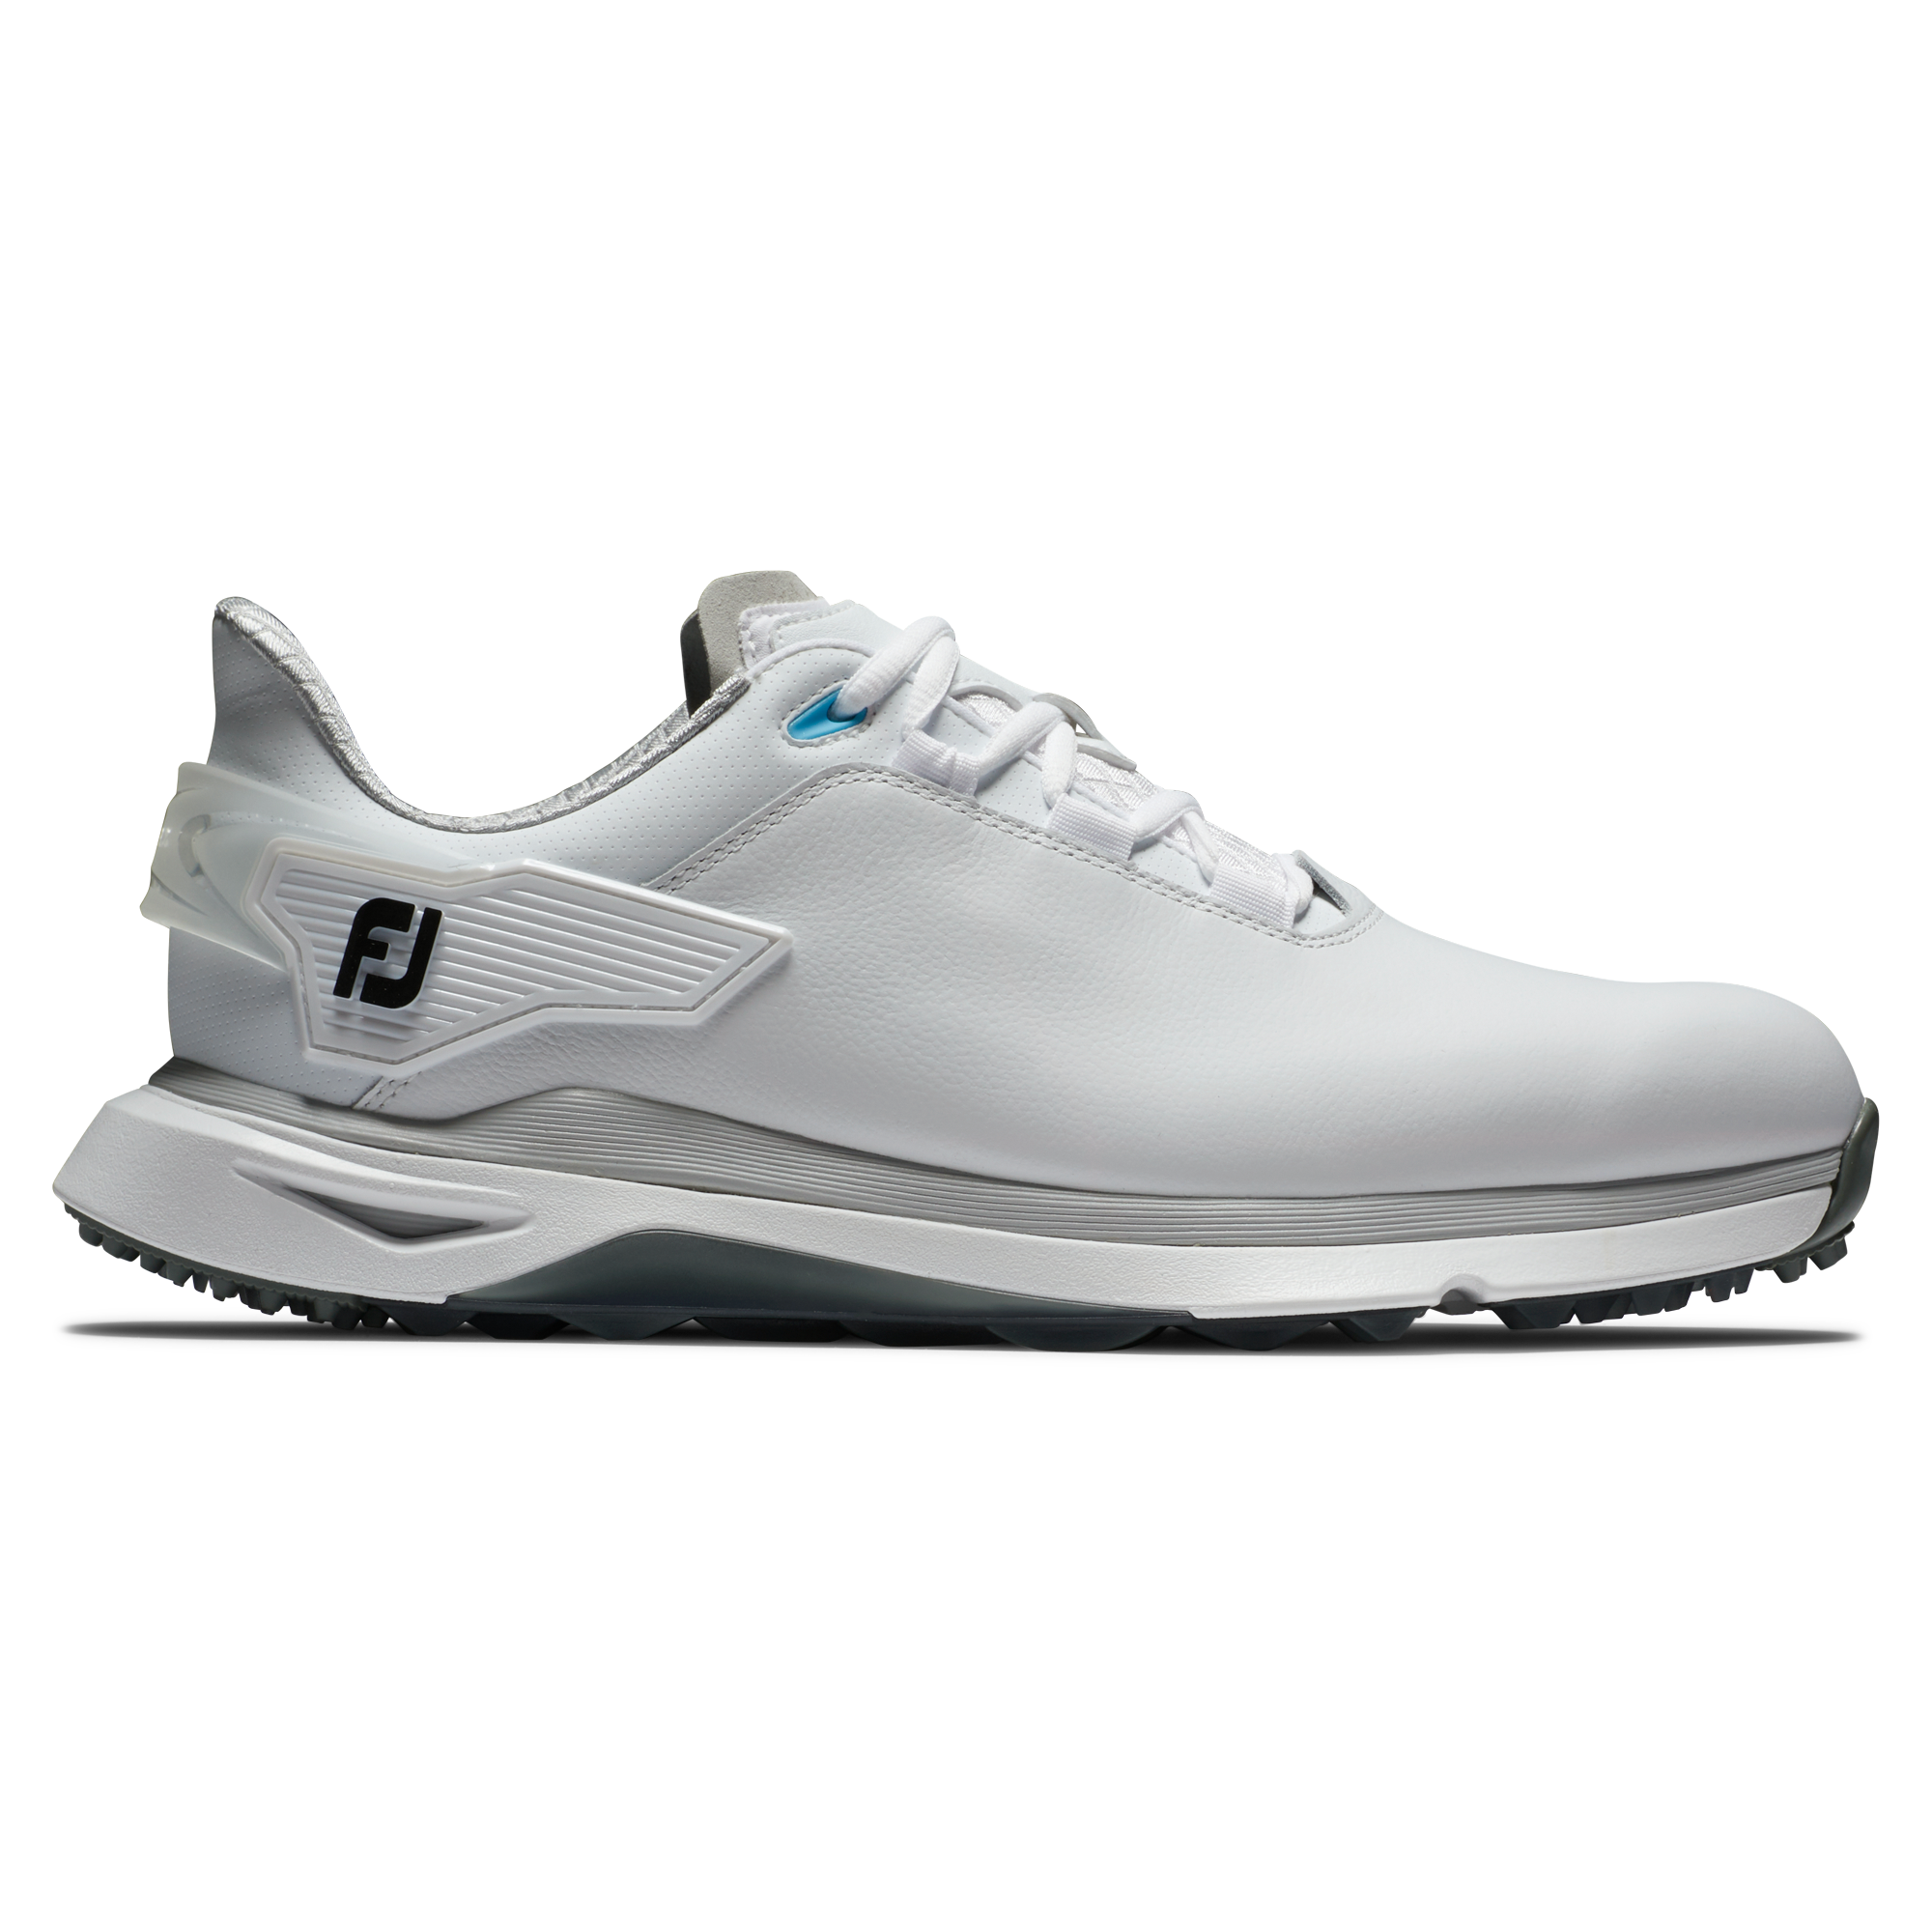 FootJoy Pro/SLX Wide pánské golfové boty, bílé/šedé, vel. 7,5 UK